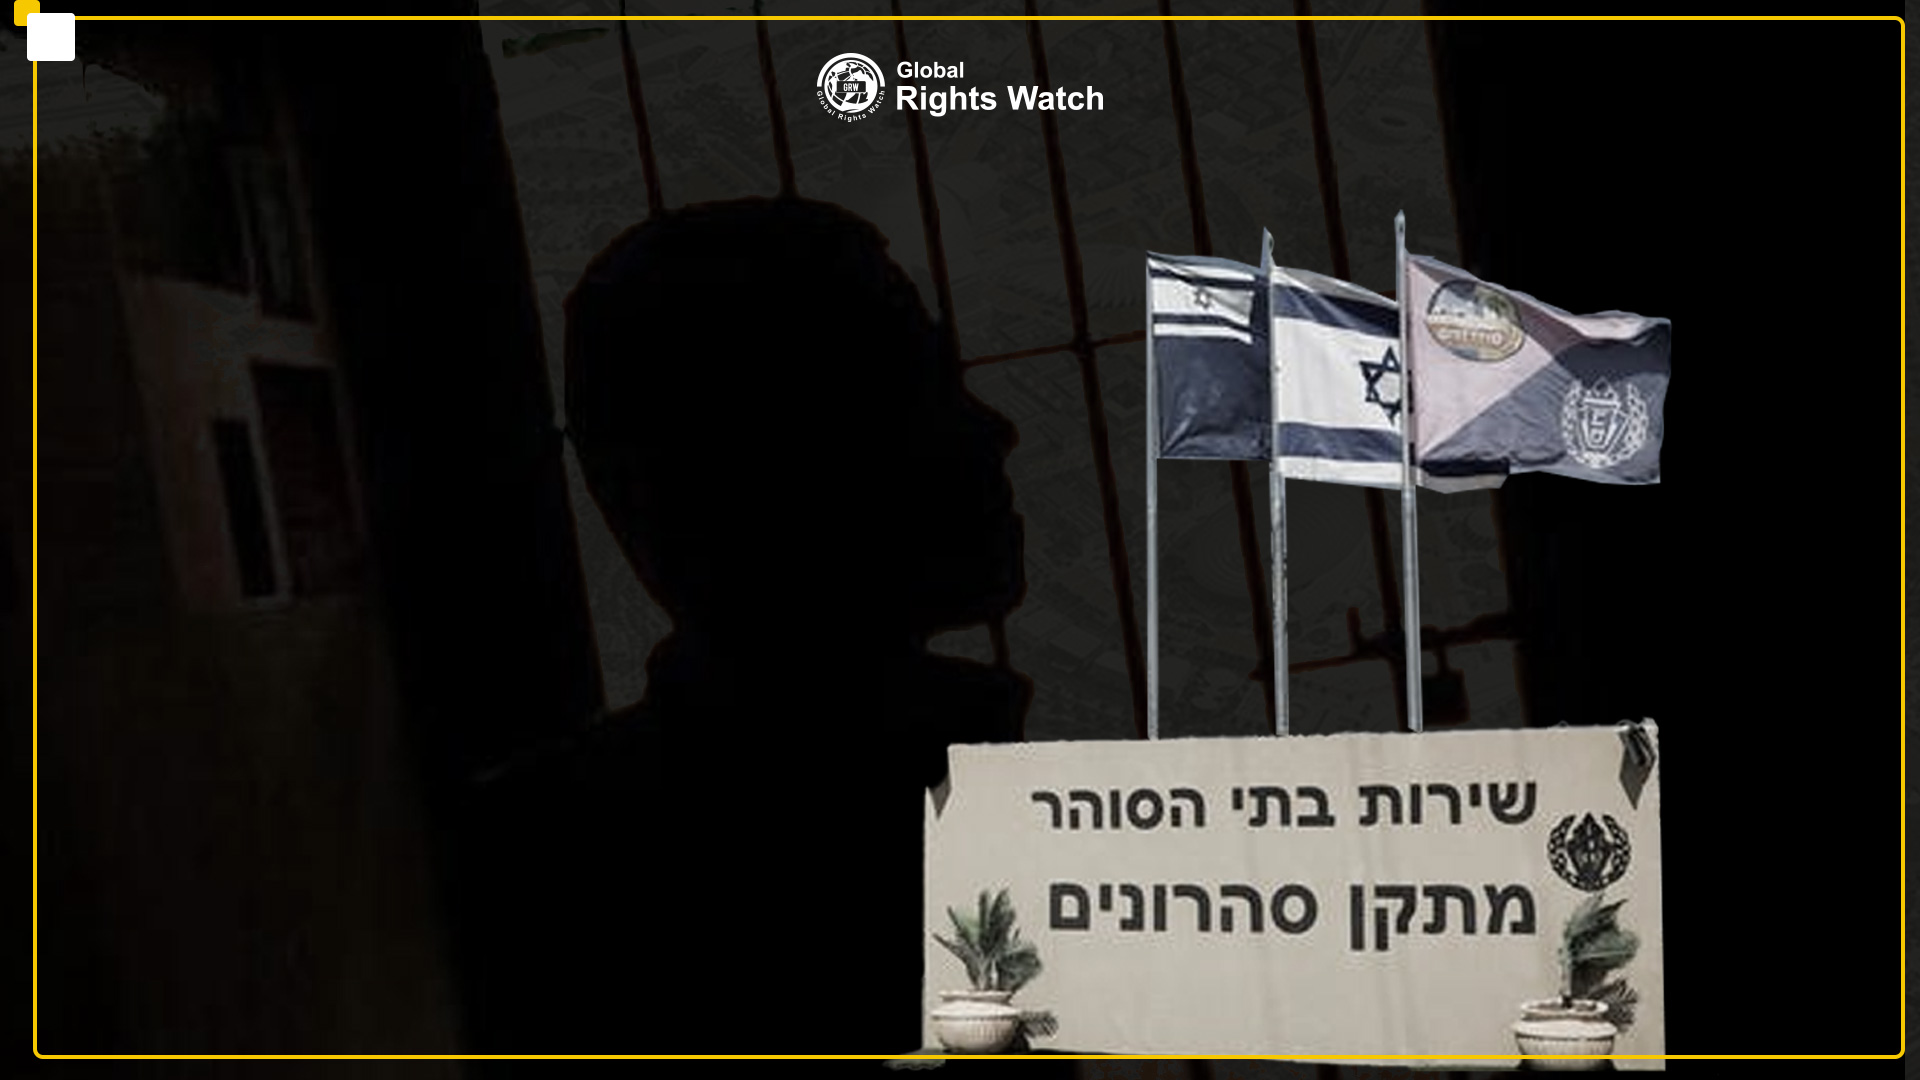 وقف التنفيذ؛ سجن بلا أسوار للأسير الفلسطيني المحرر من سجون الاحتلال الإسرائيلي